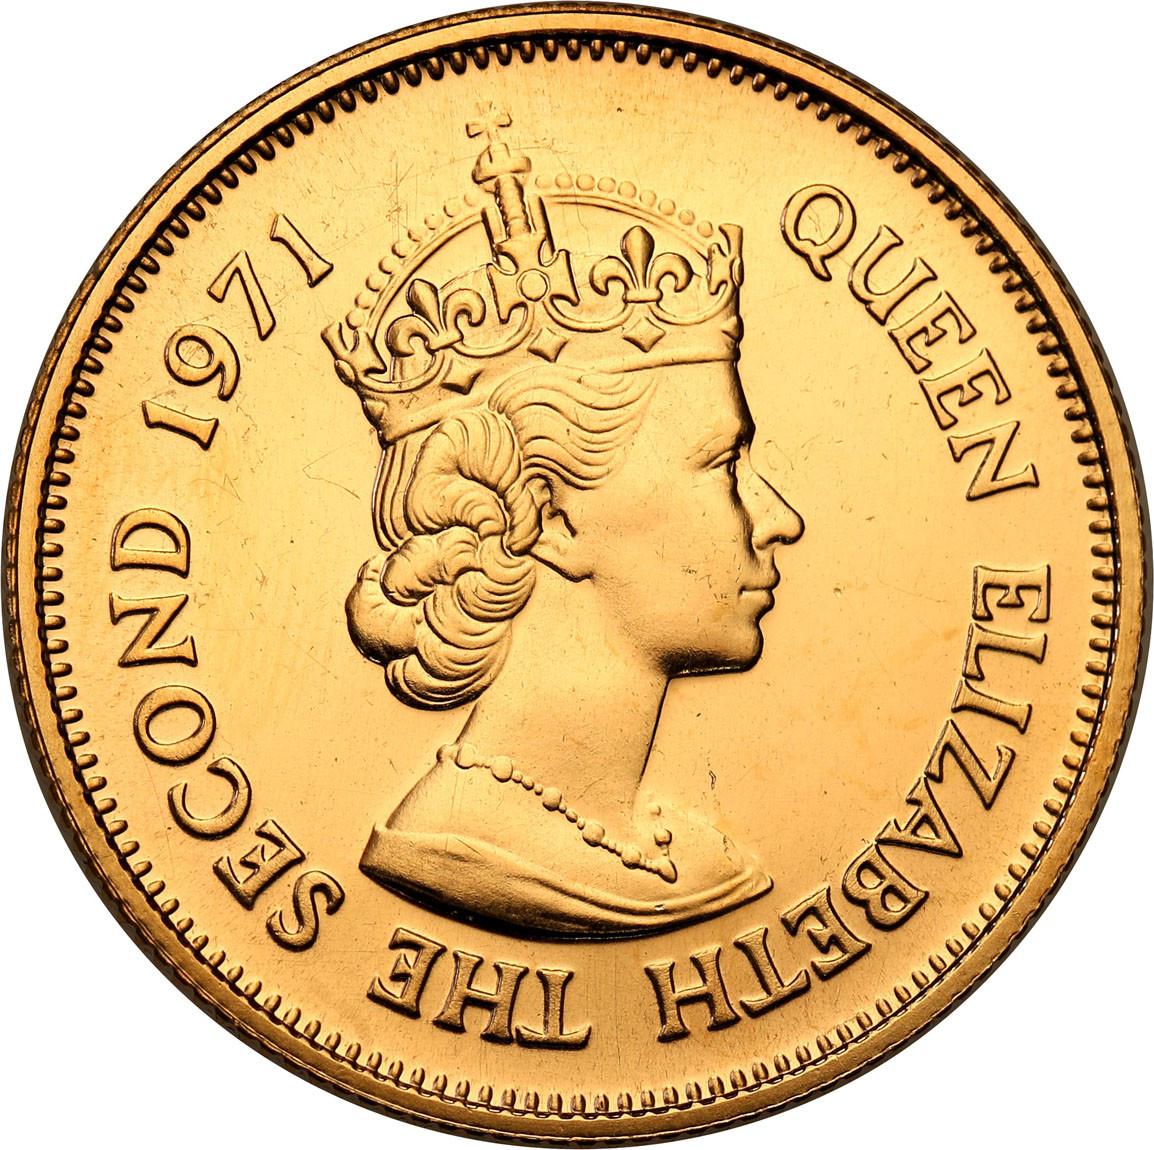 Mauritius. Elizabeth II. 200 rupees, 1971 st.1-